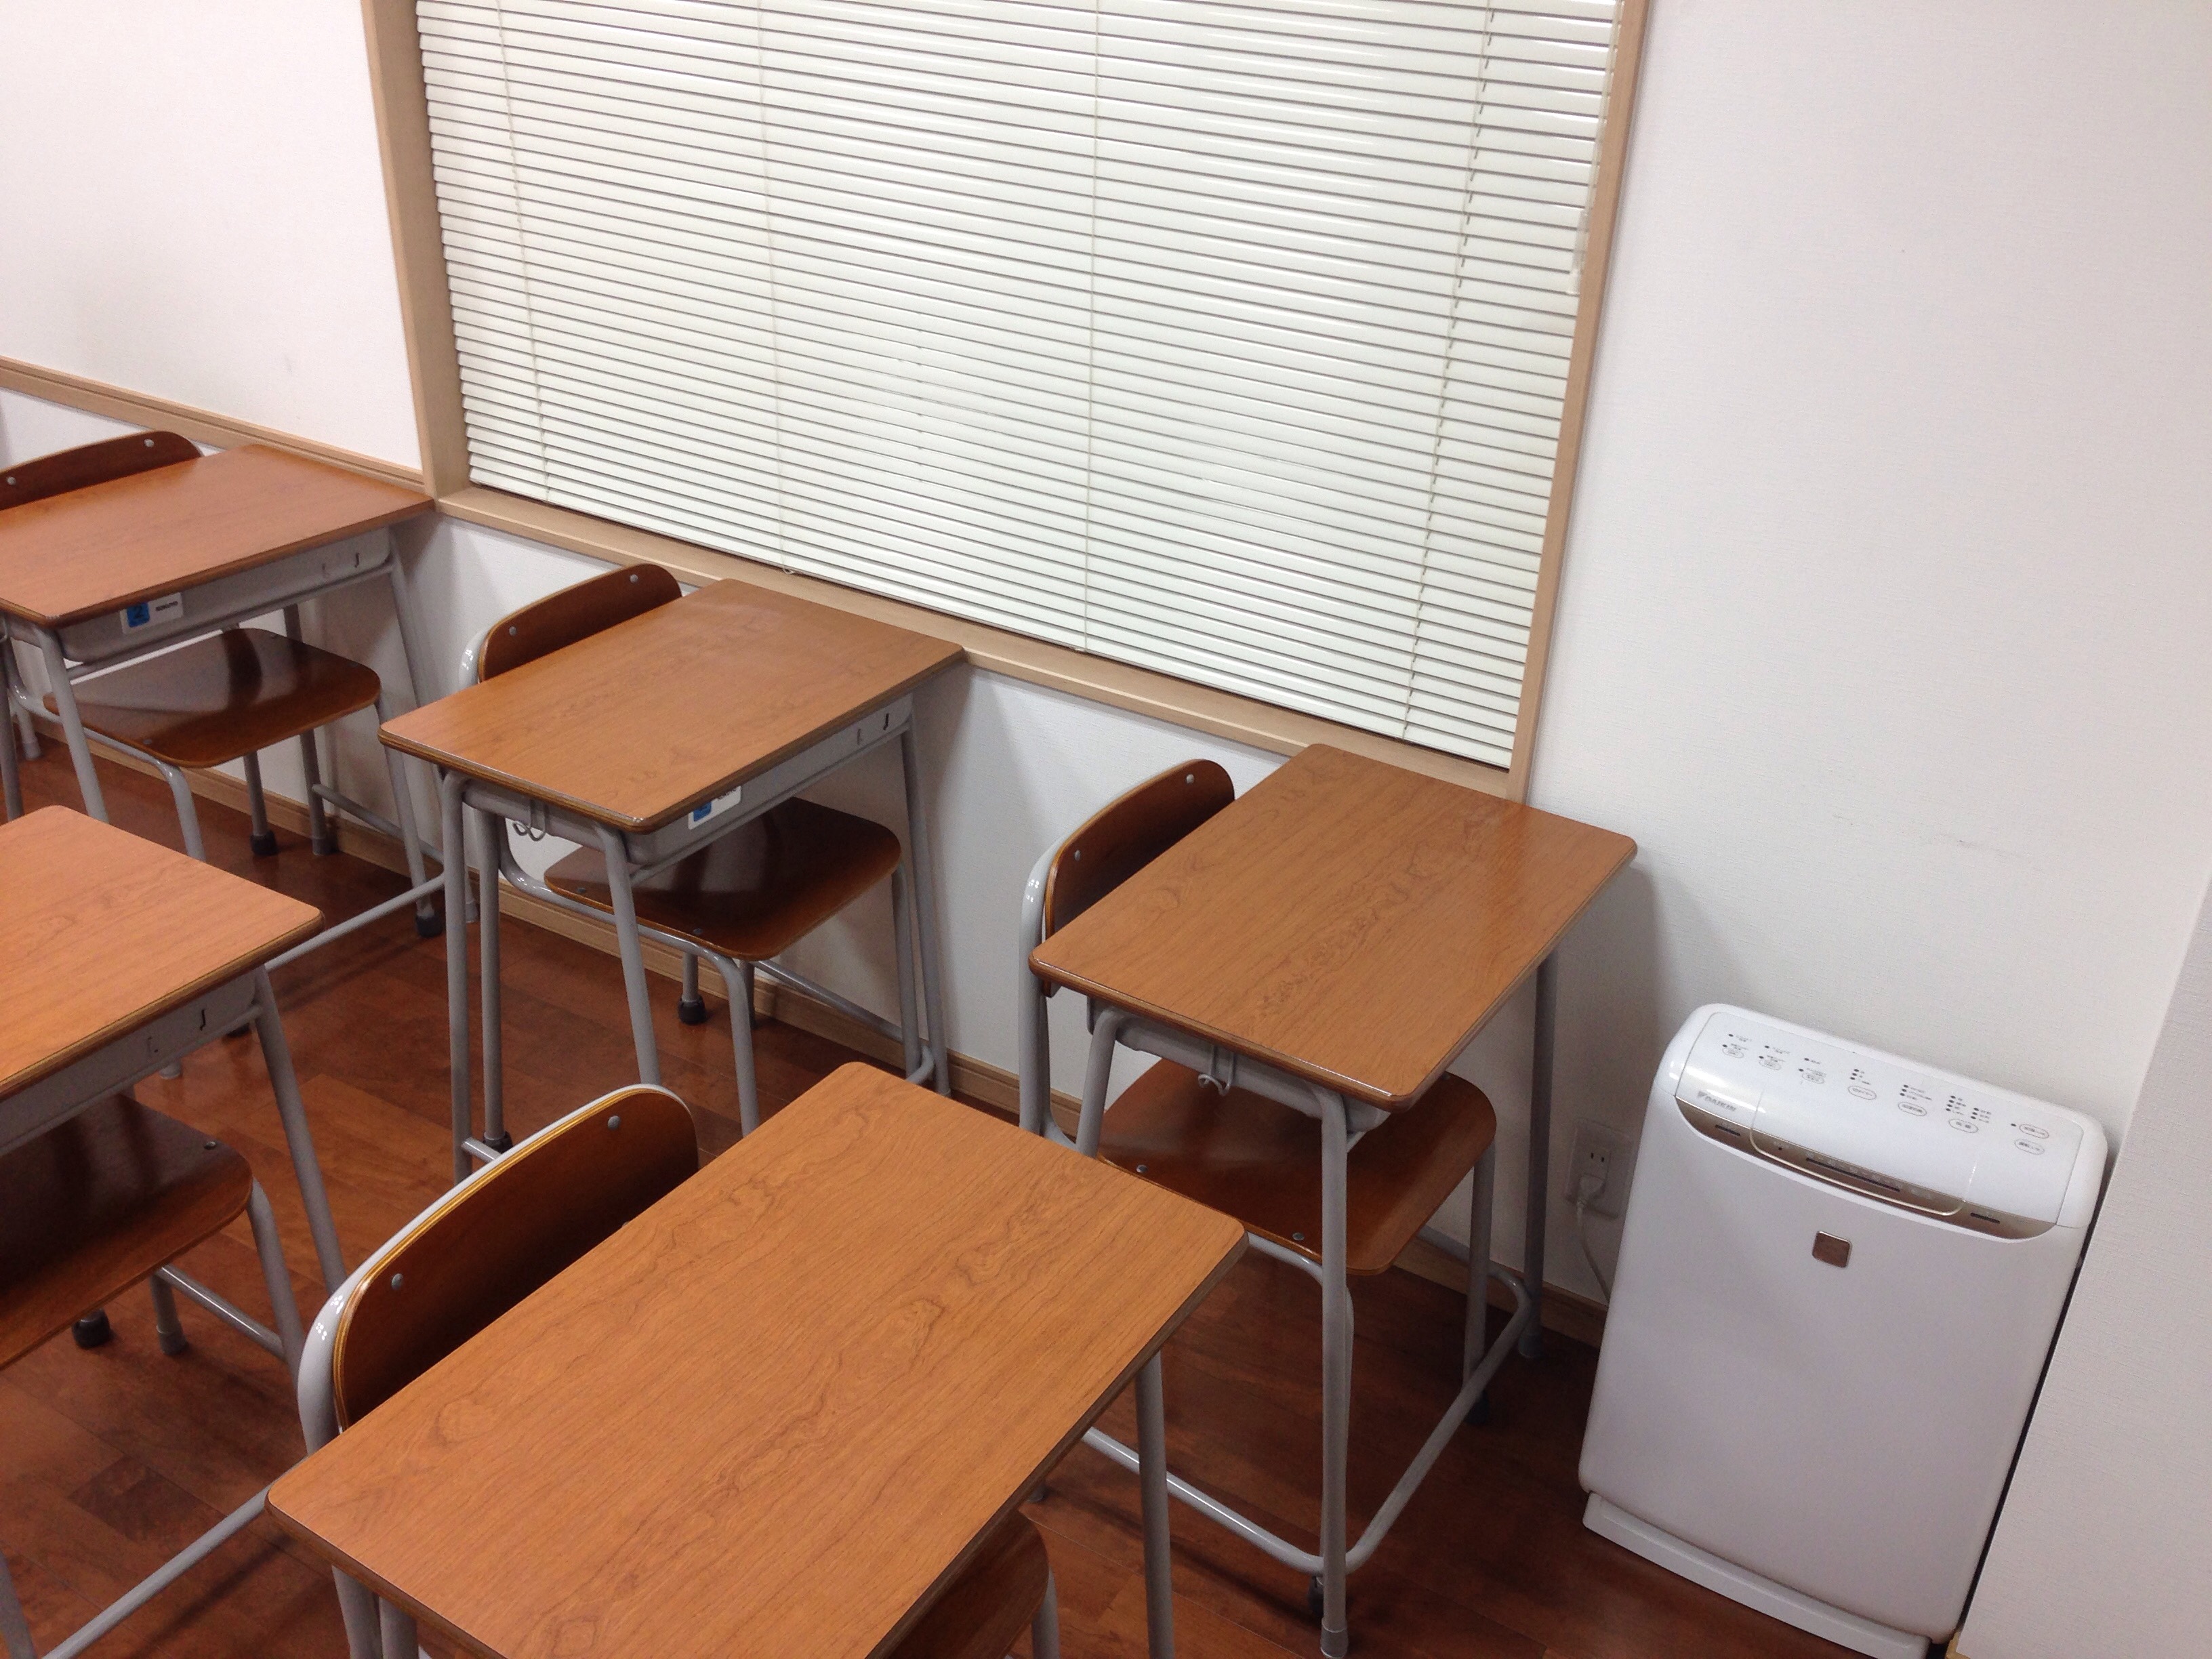 空気清浄機、床暖房を各教室に配置しています